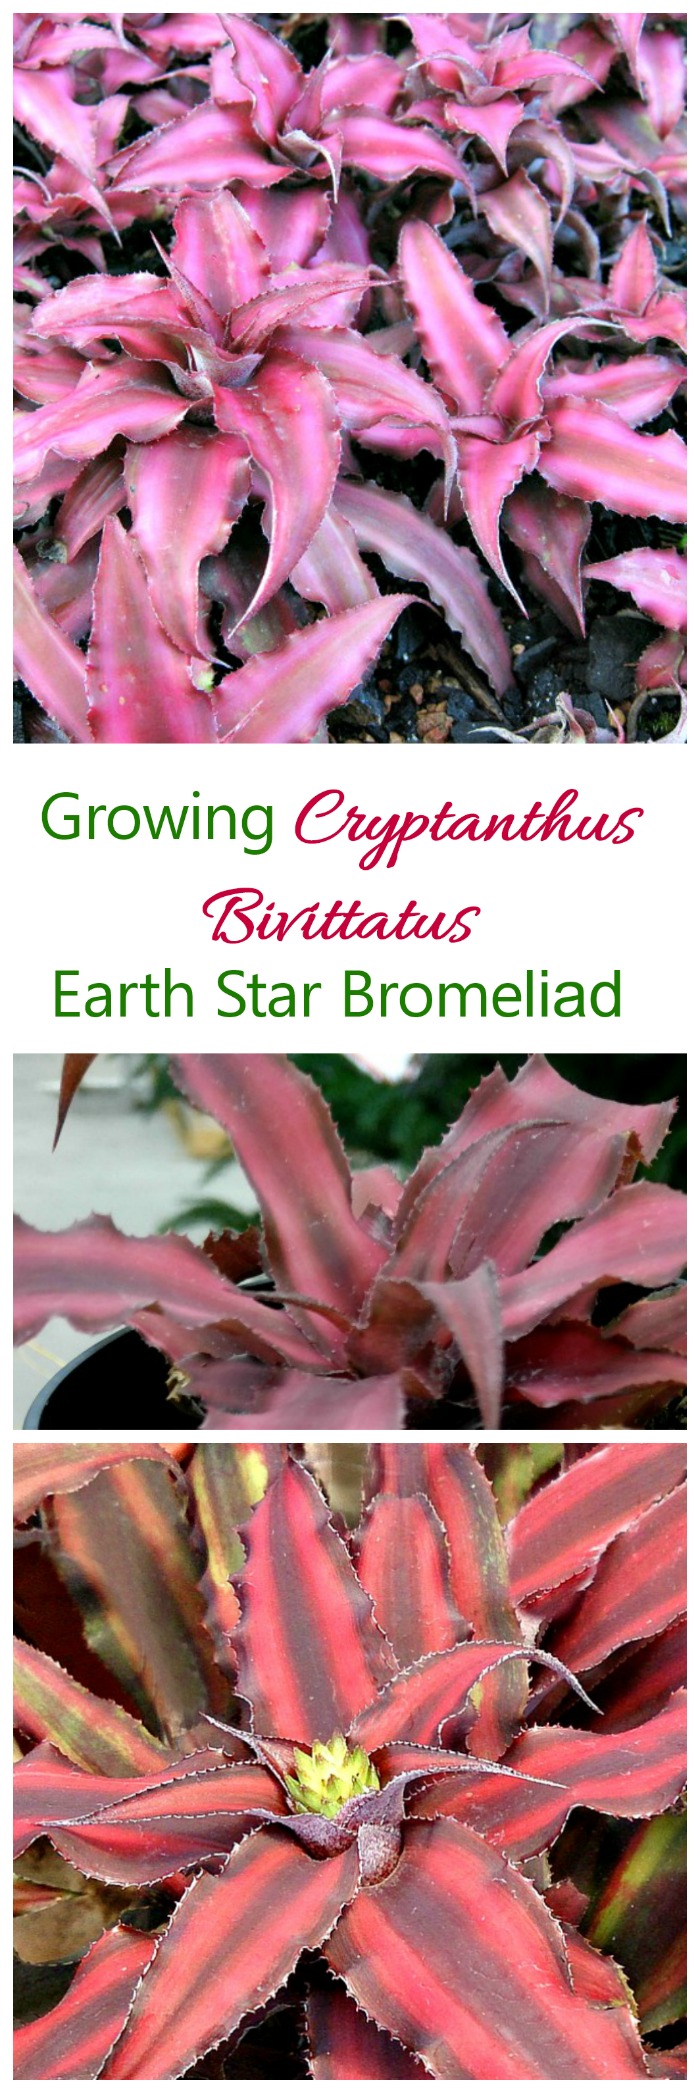 Cryptanthus Bivittatus - نجم الأرض المتنامي بروميلياد